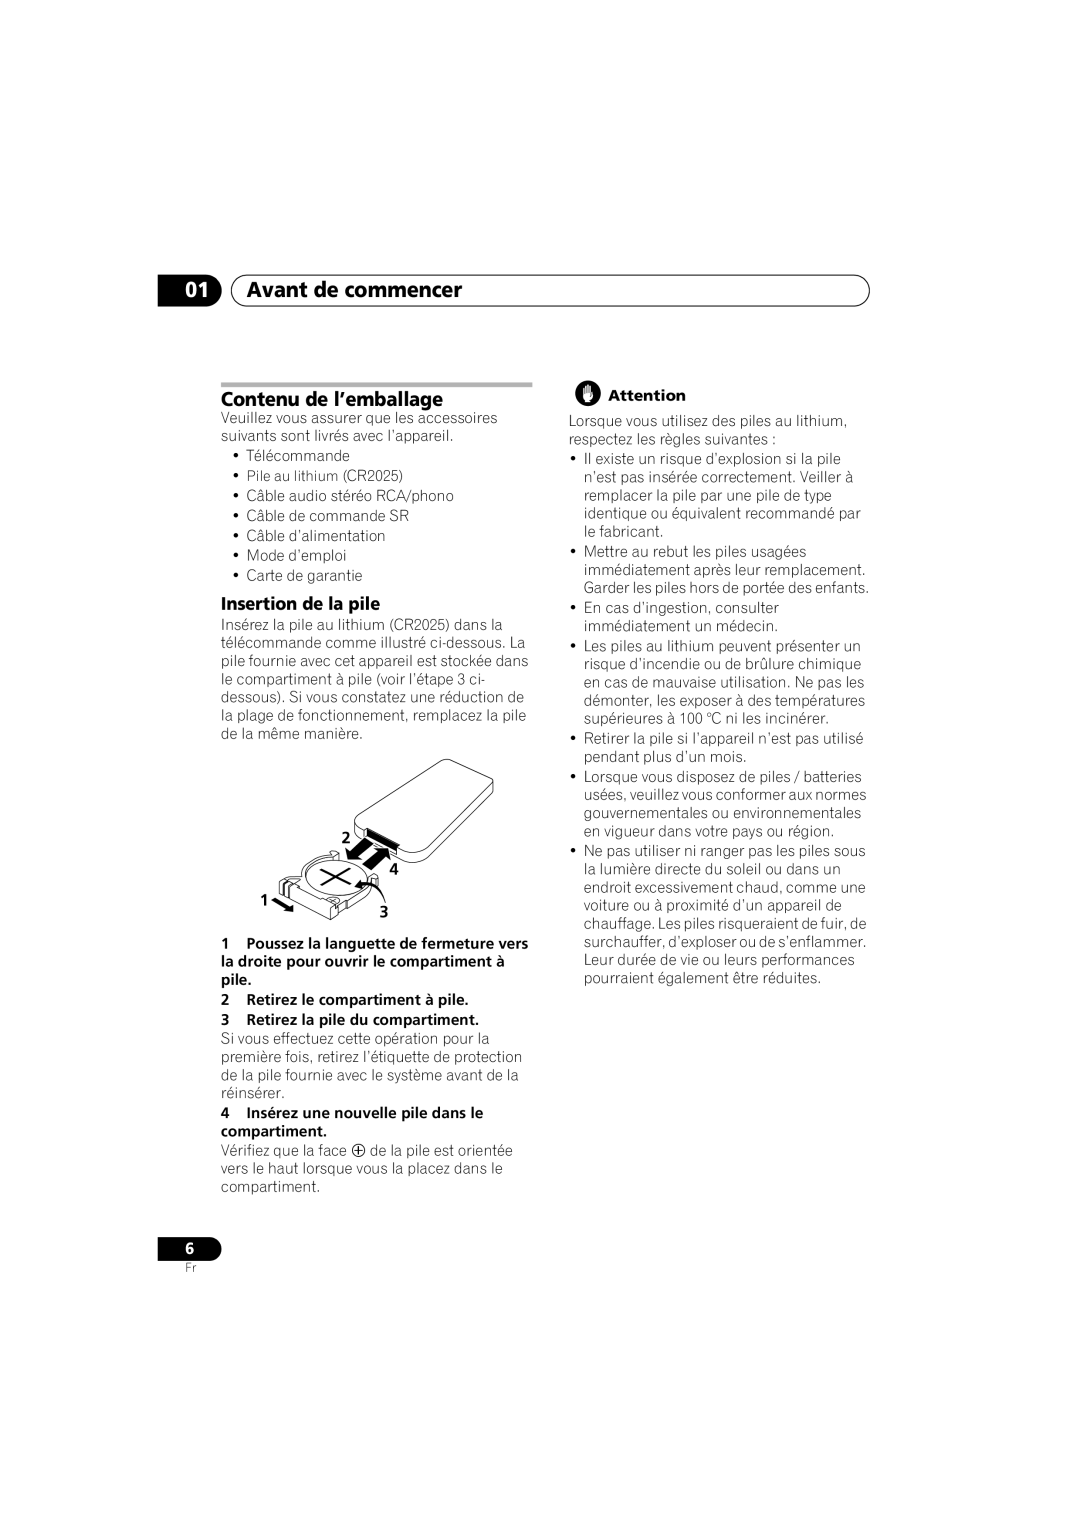 Pioneer PD-D6-J manual 01Avant de commencer, Contenu de l’emballage, Insertion de la pile 